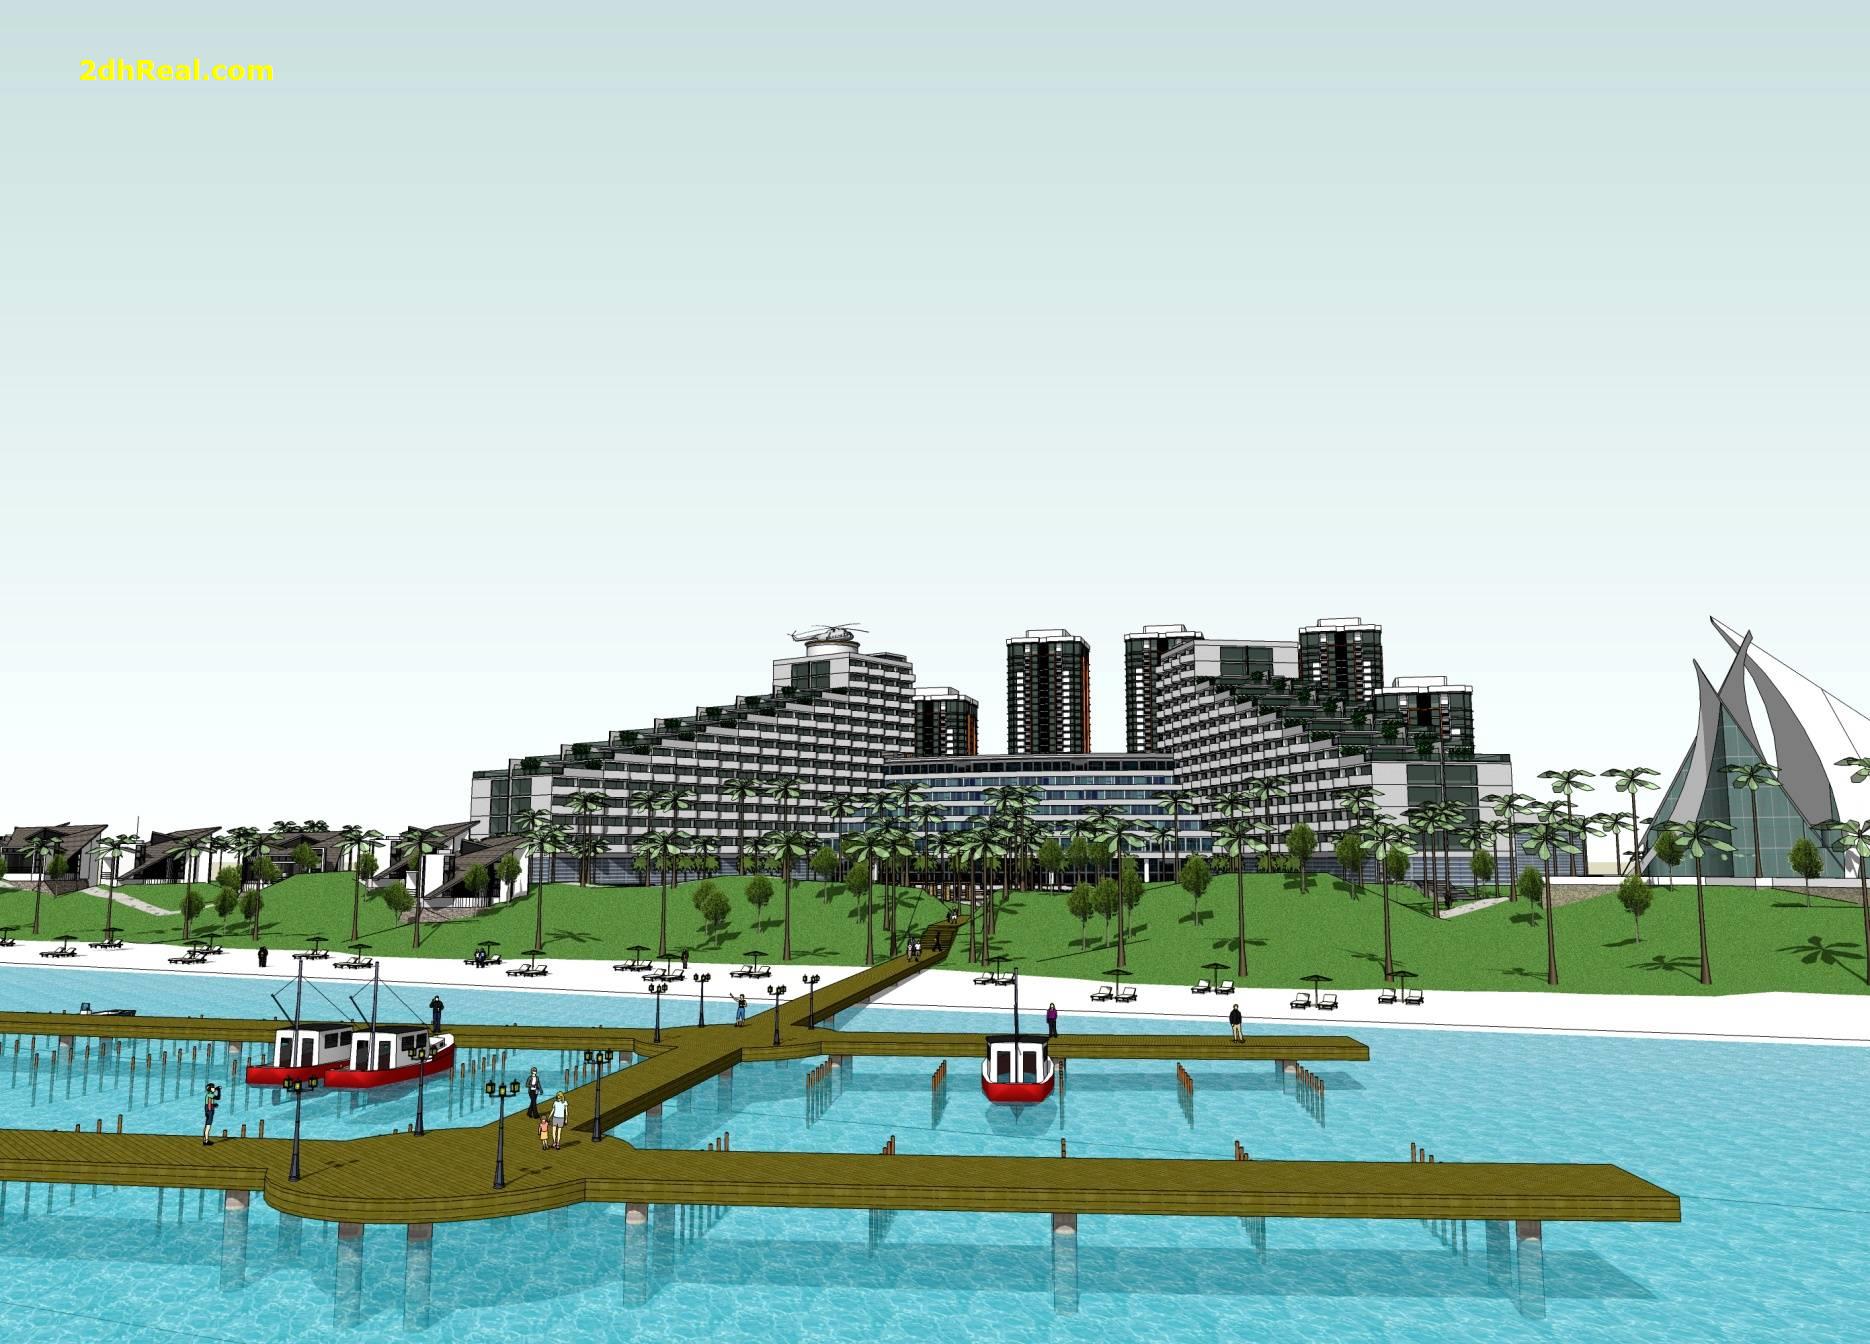 Bán dự án Resort 5 sao 20 hecta tại thành phố Vũng Tàu, tỉnh Bà Rịa – Vũng Tàu